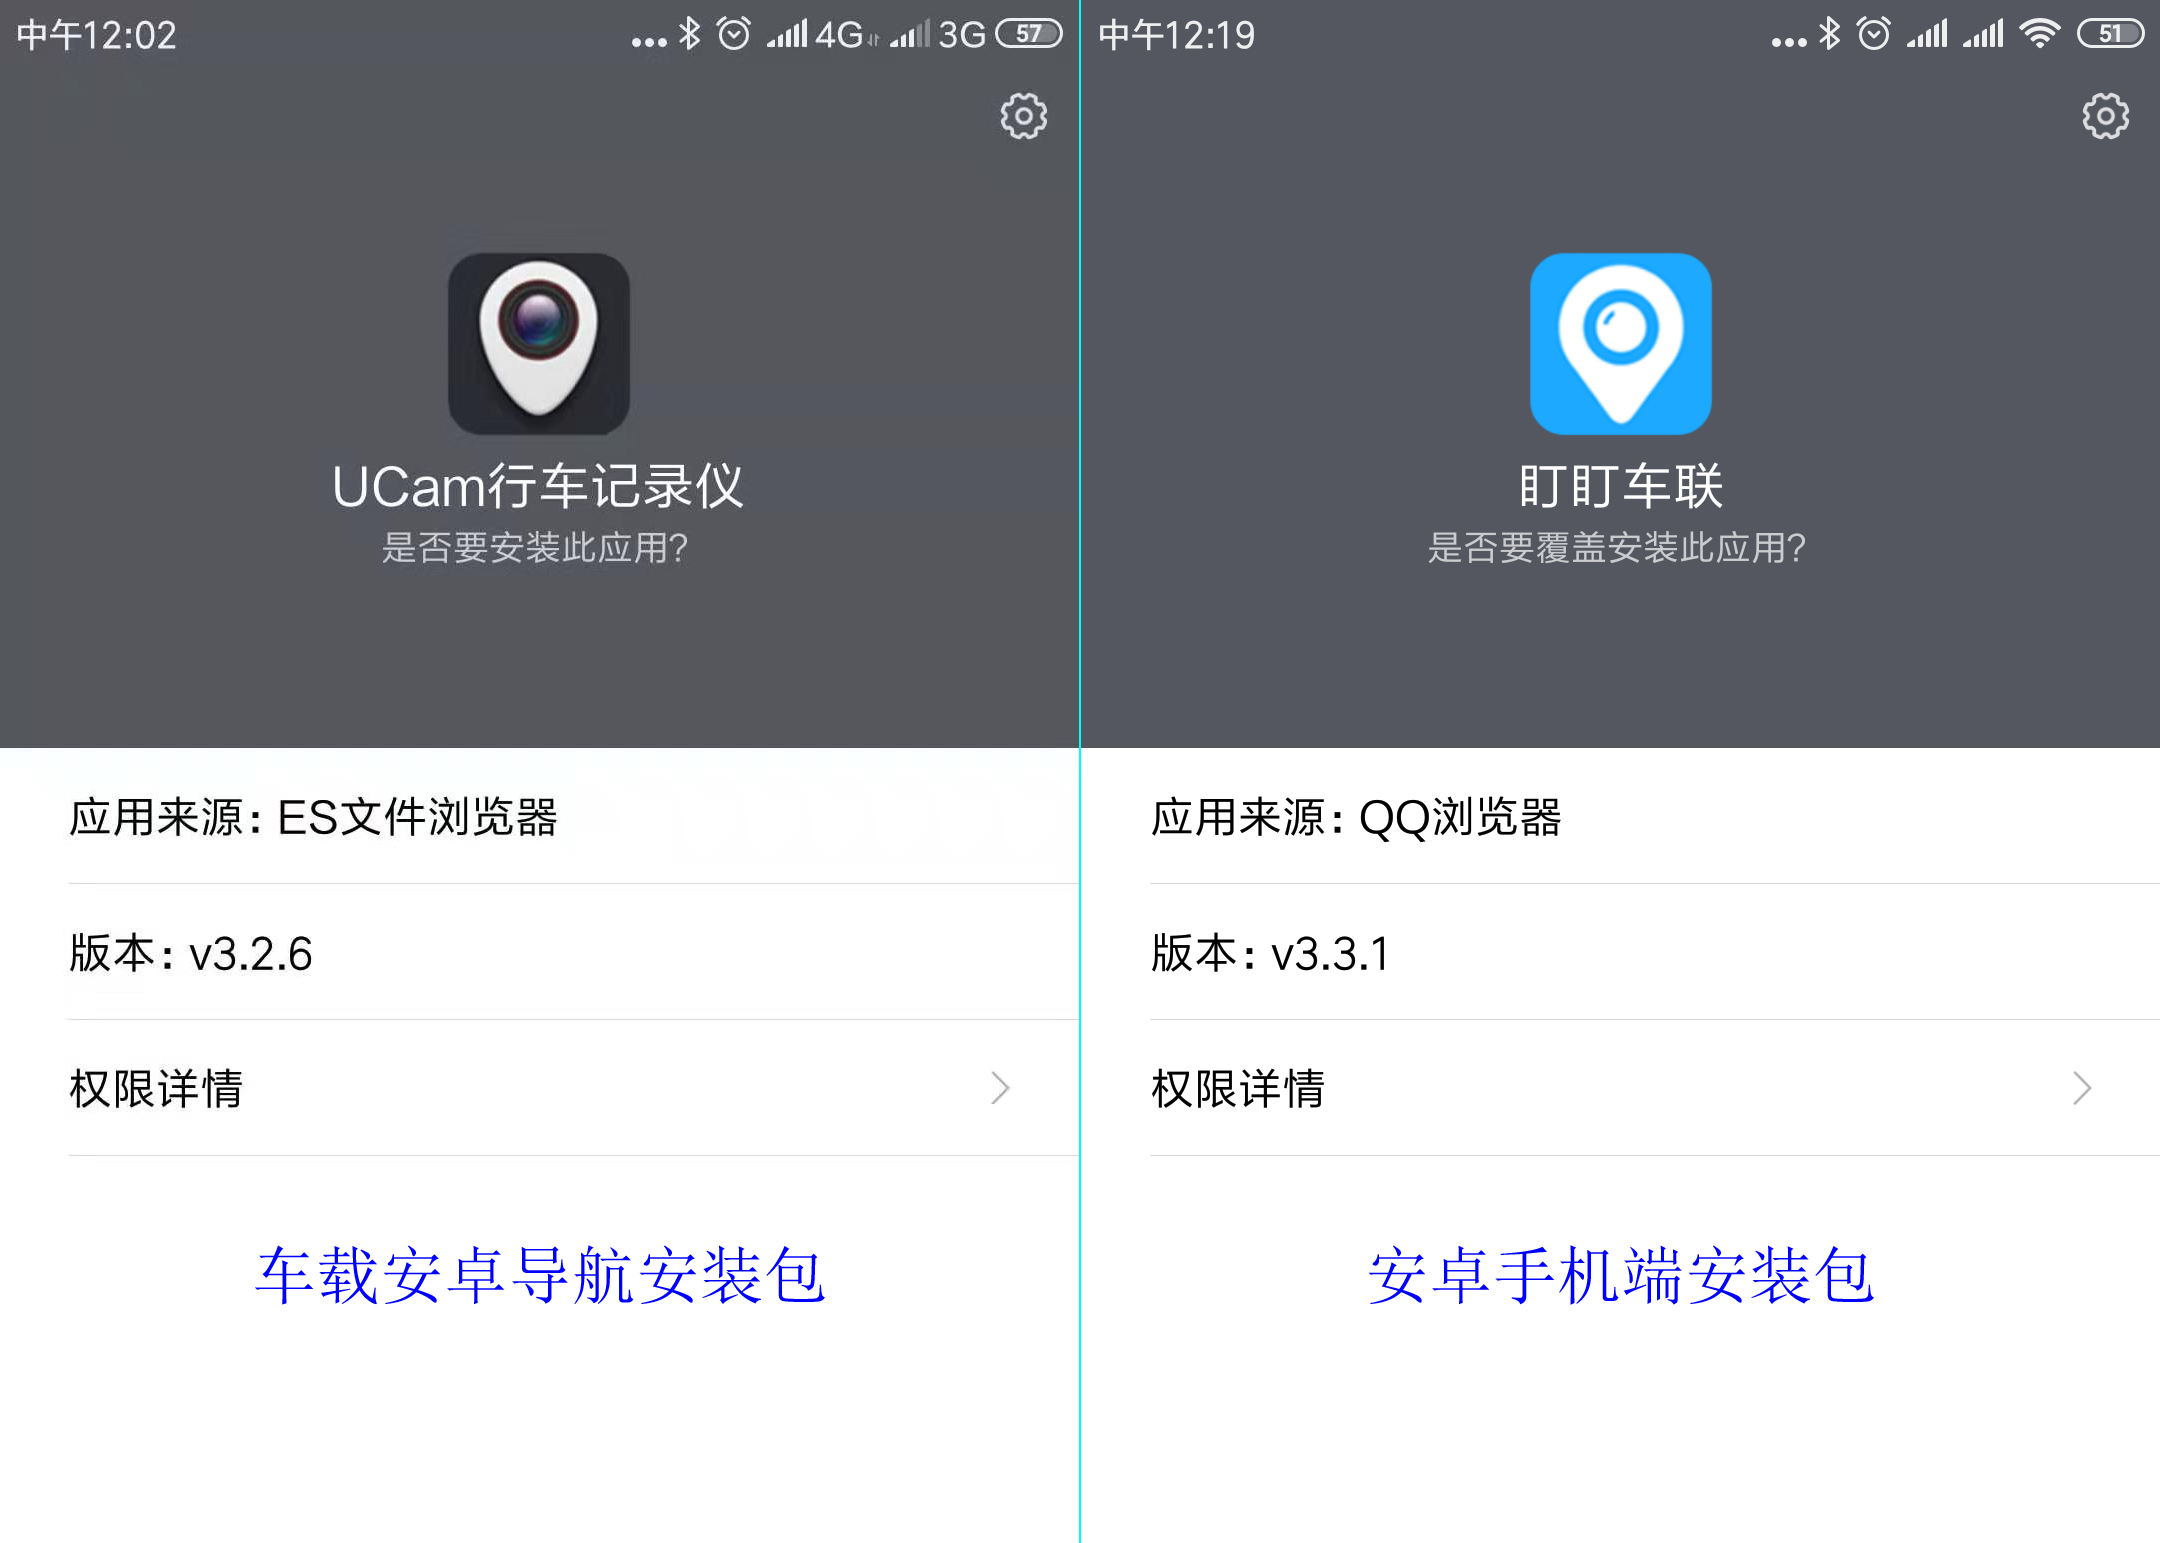 车辆导航UCam行车记录仪(uCarDvr)和手机终端的安装文件